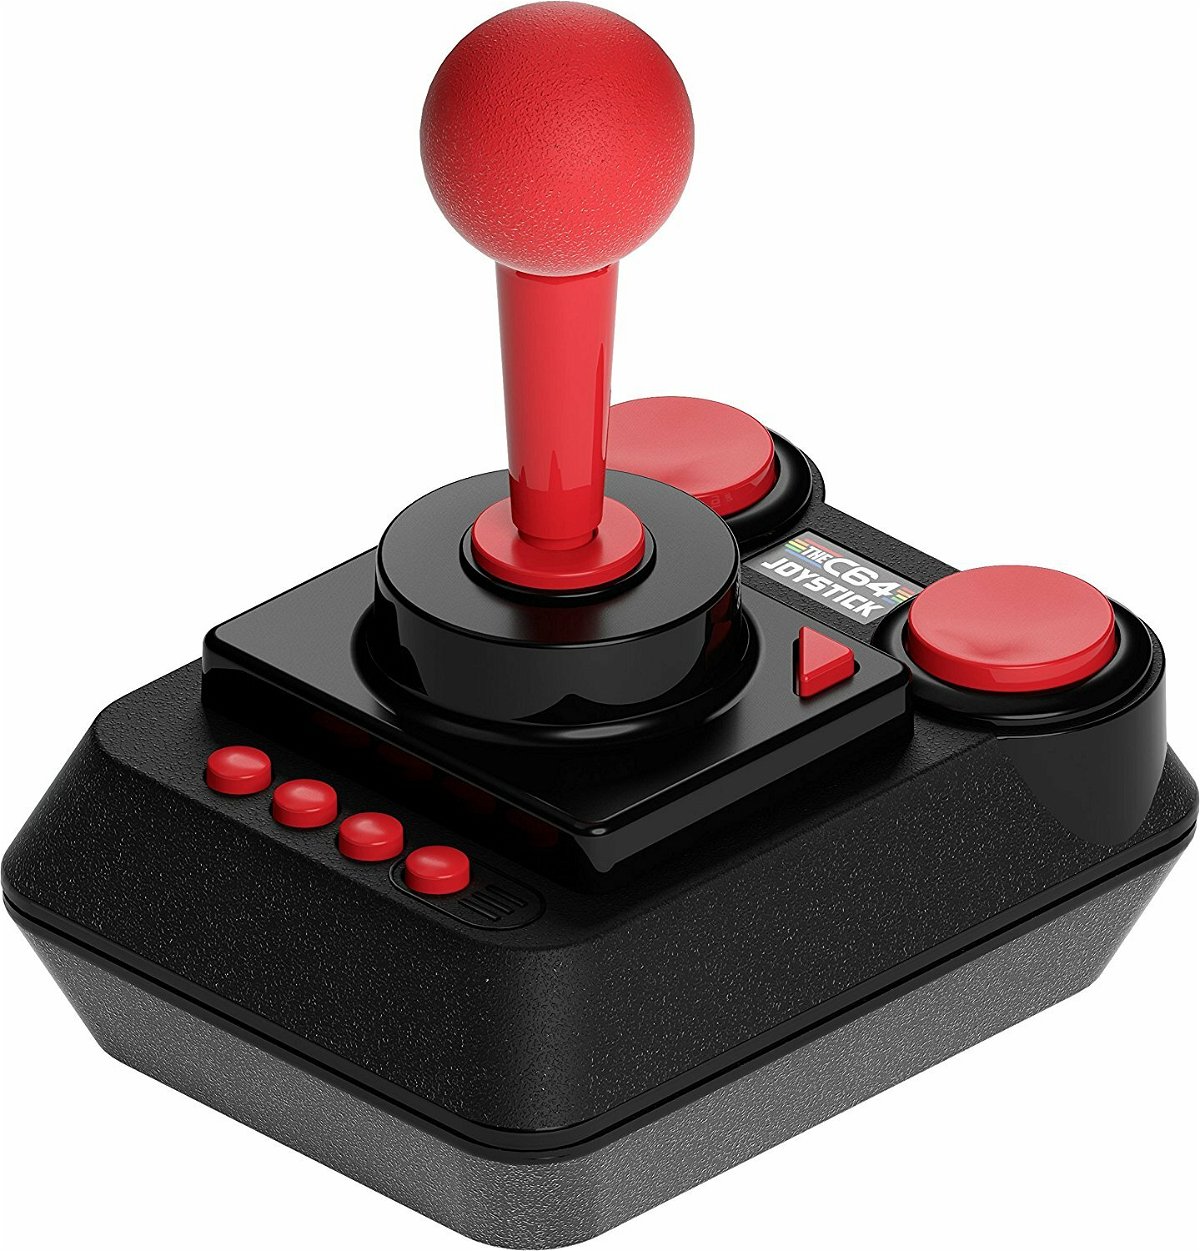 Il classico joystick USB incluso nella confezione di THEC64 Mini